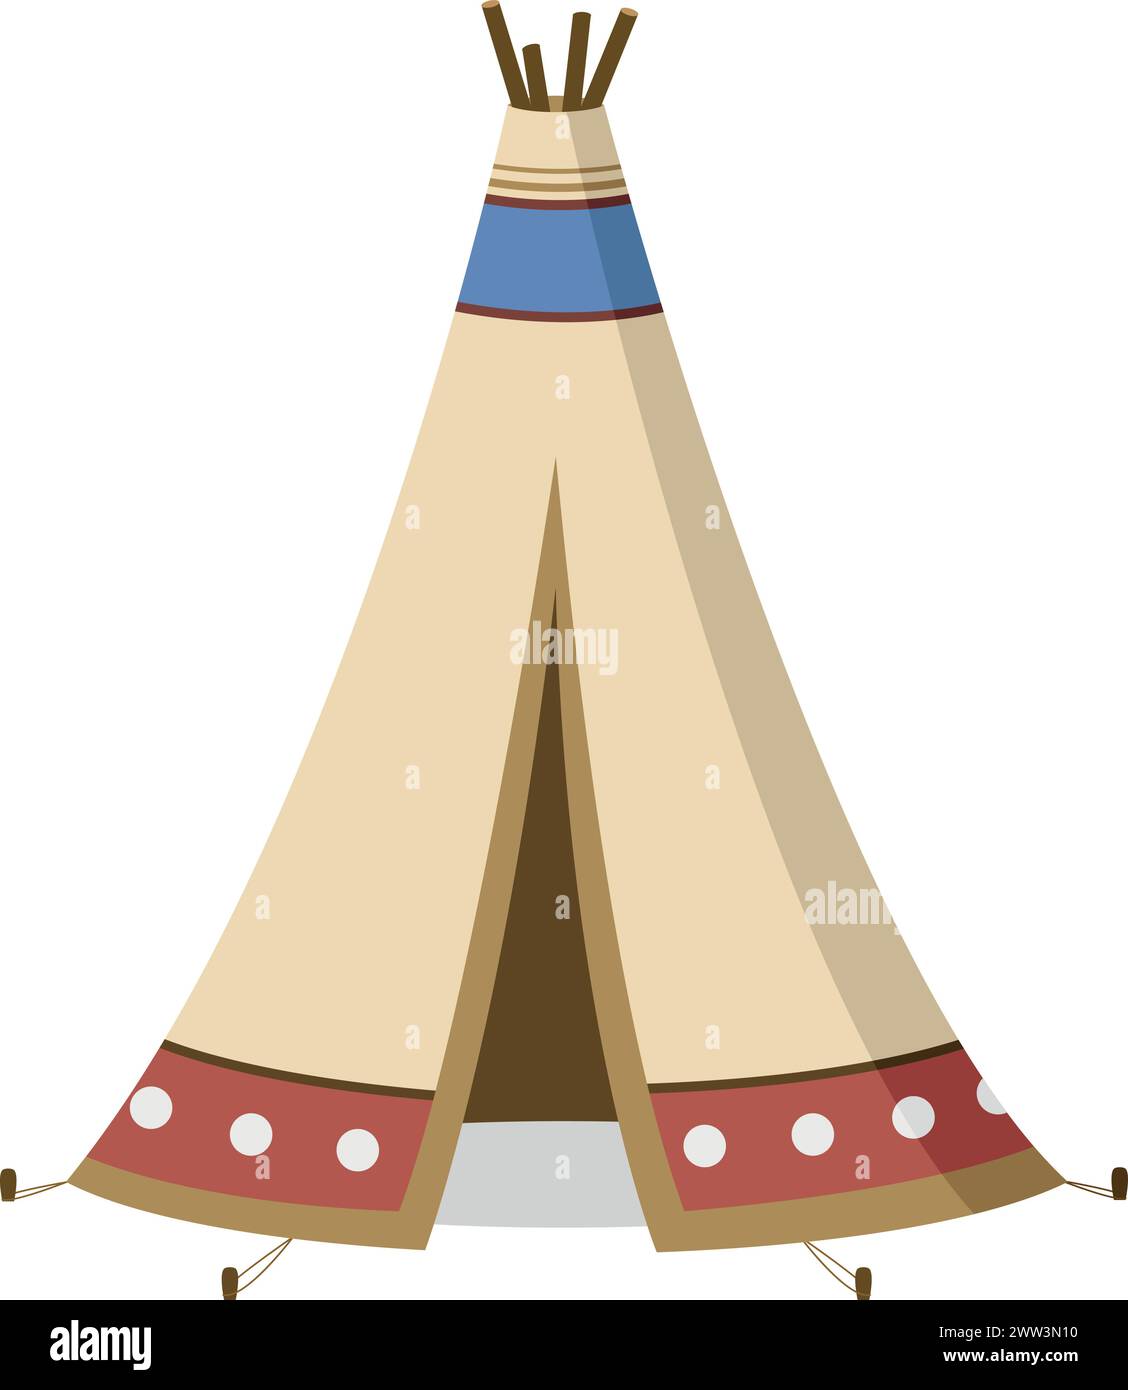 Vektor-Illustration eines traditionellen amerikanischen Tipi im Zeichentrickstil isoliert auf weißem Hintergrund. Traditionelle Häuser der World Series Stock Vektor